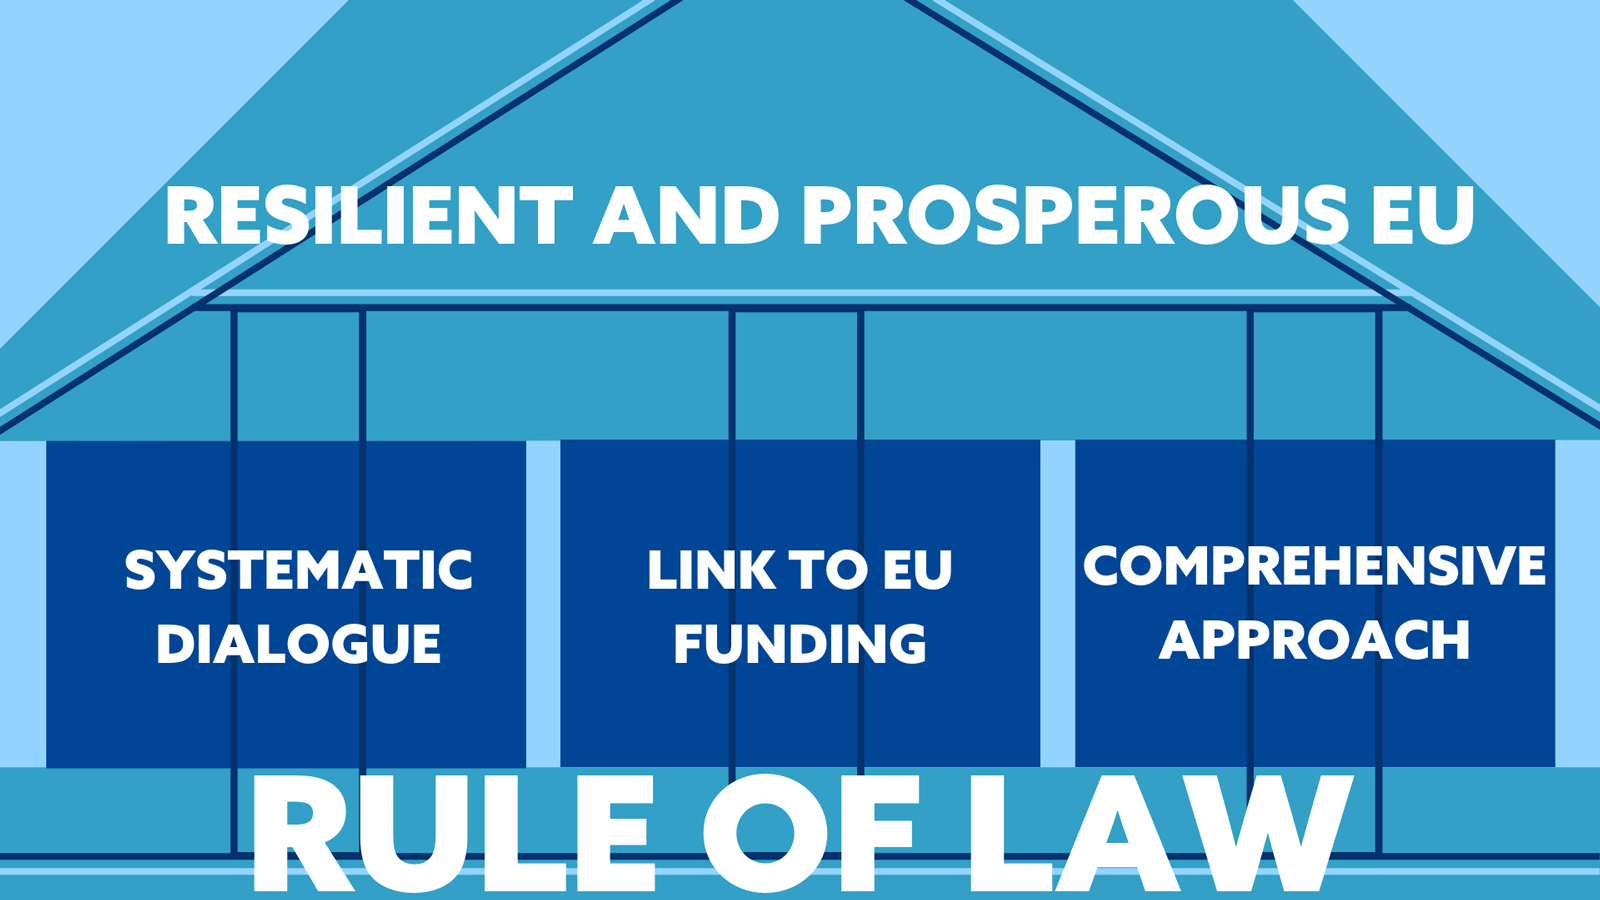 Kuva havainnollistaa oikeusvaltioperiaatetta turvallisen ja vauraan EU:n perustana. Oikeusvaltioperiaatetta vahvistavat vuoropuhelu, yhteys EU:n budjettiin ja yhteistyö.